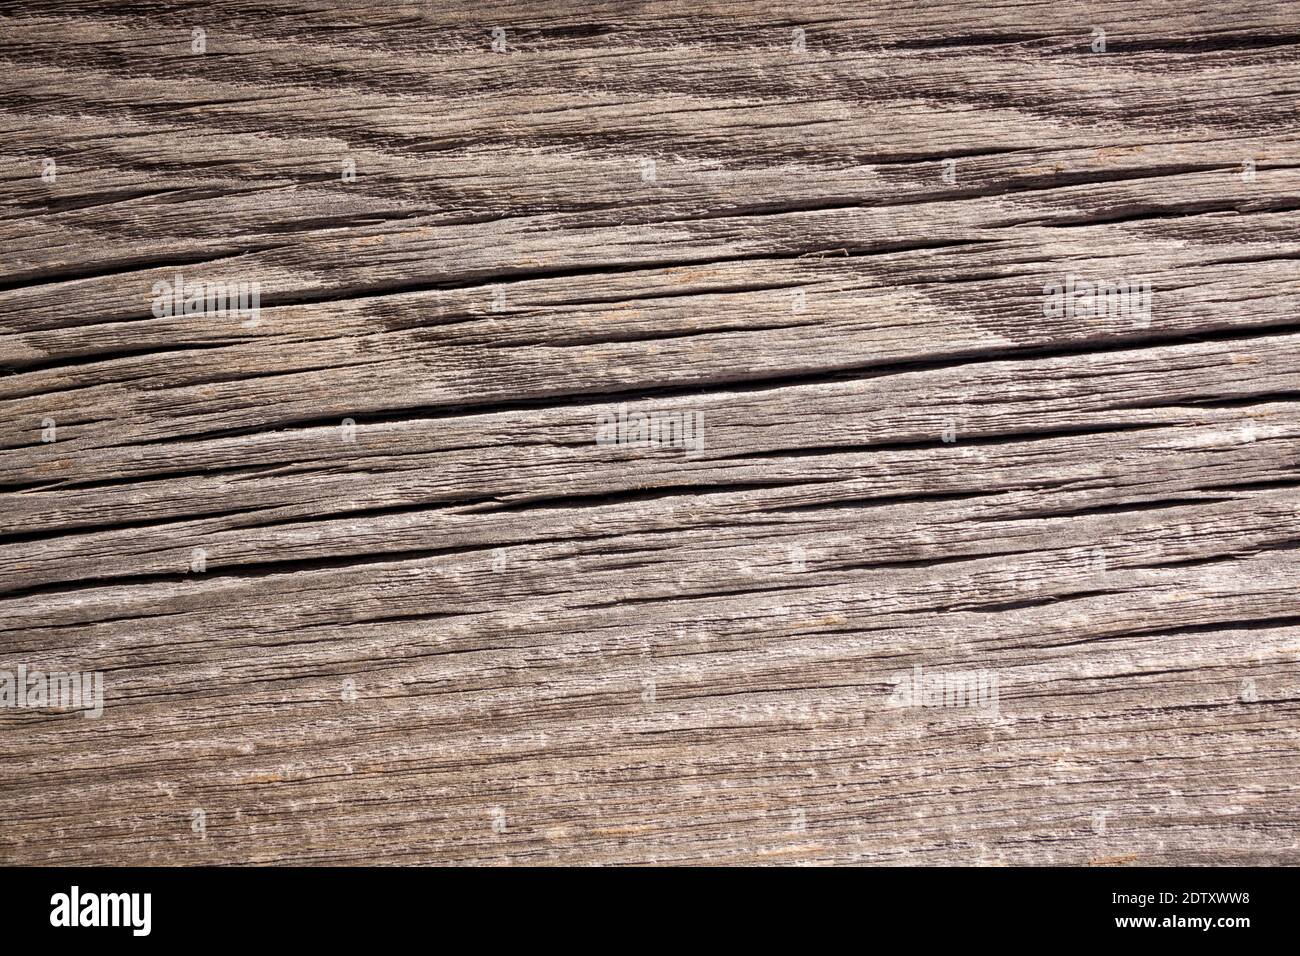 Natürlicher Holzhintergrund. Detaillierte grafische Ressource, frisch geschnittene Kiefernholz-Textur. Panoramabild im Grunge-Stil Stockfoto